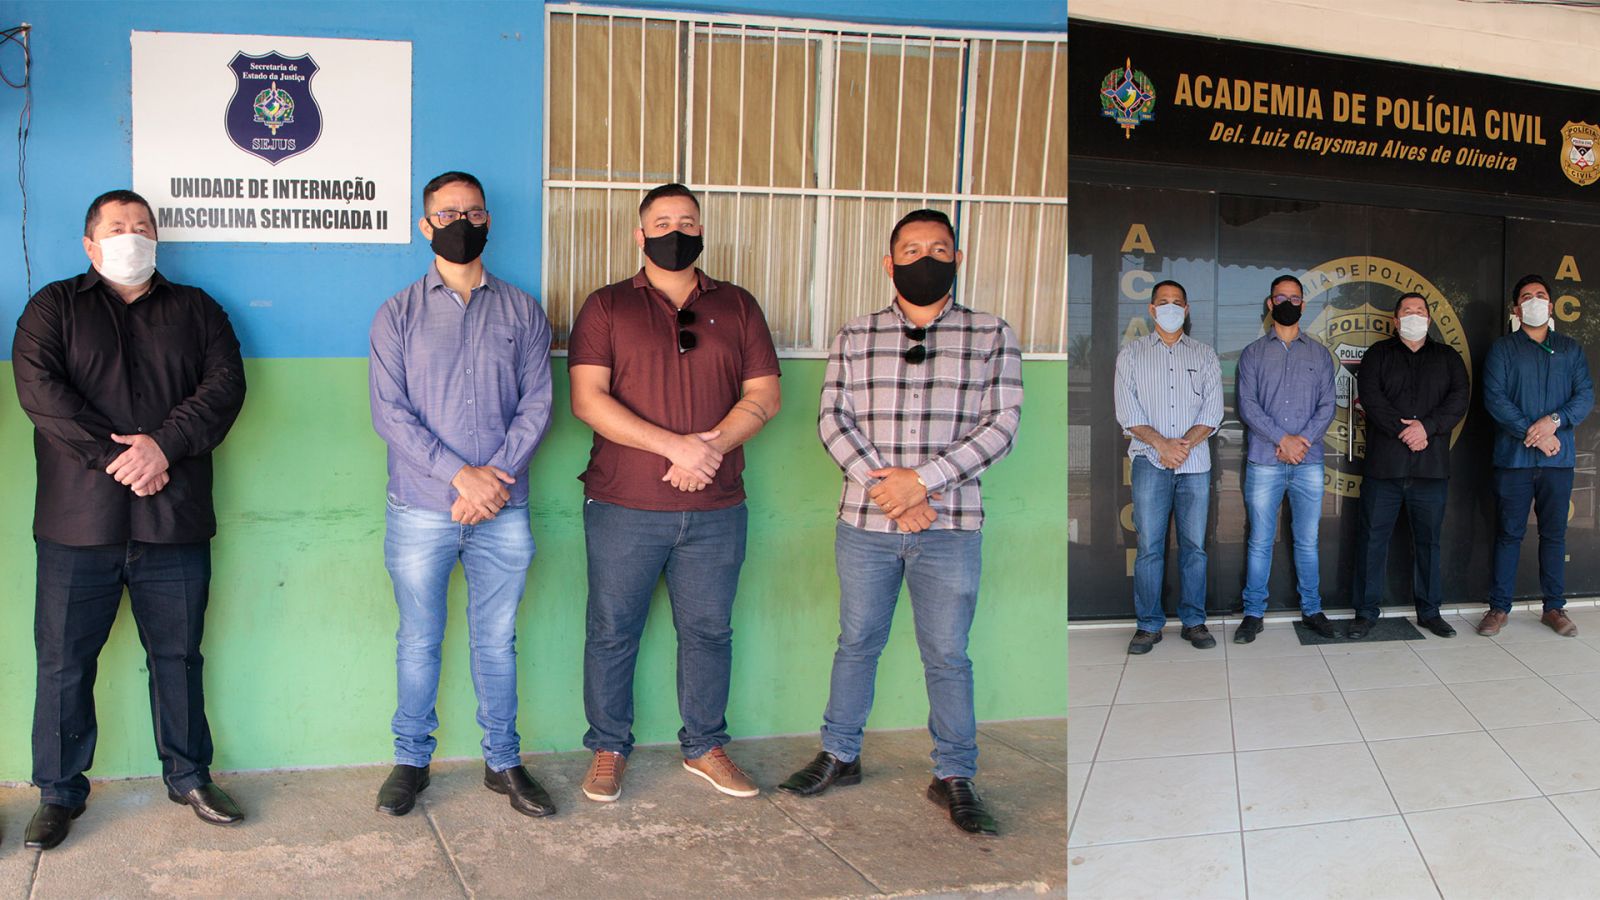 MELHORIAS  Unidade de internação e ACADEPOL recebem visita do deputado Anderson e equipe técnica da SEOSP - News Rondônia